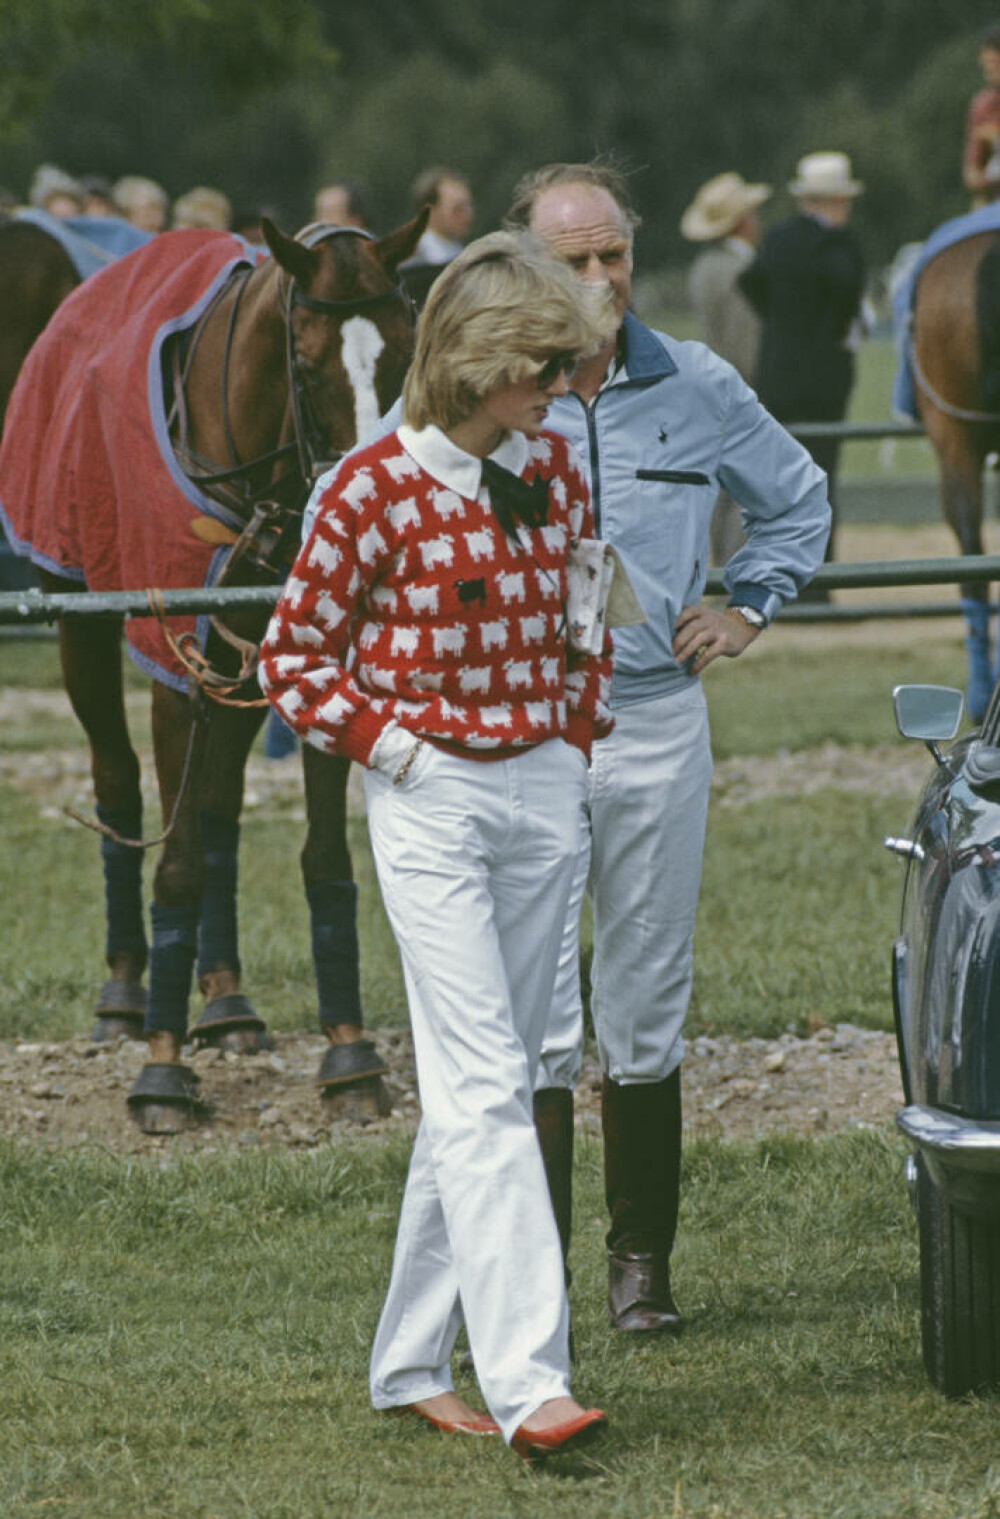 Celebrul pulover cu oi purtat de prinţesa Diana, vândut la licitaţie cu peste un milion de dolari. FOTO - Imaginea 2